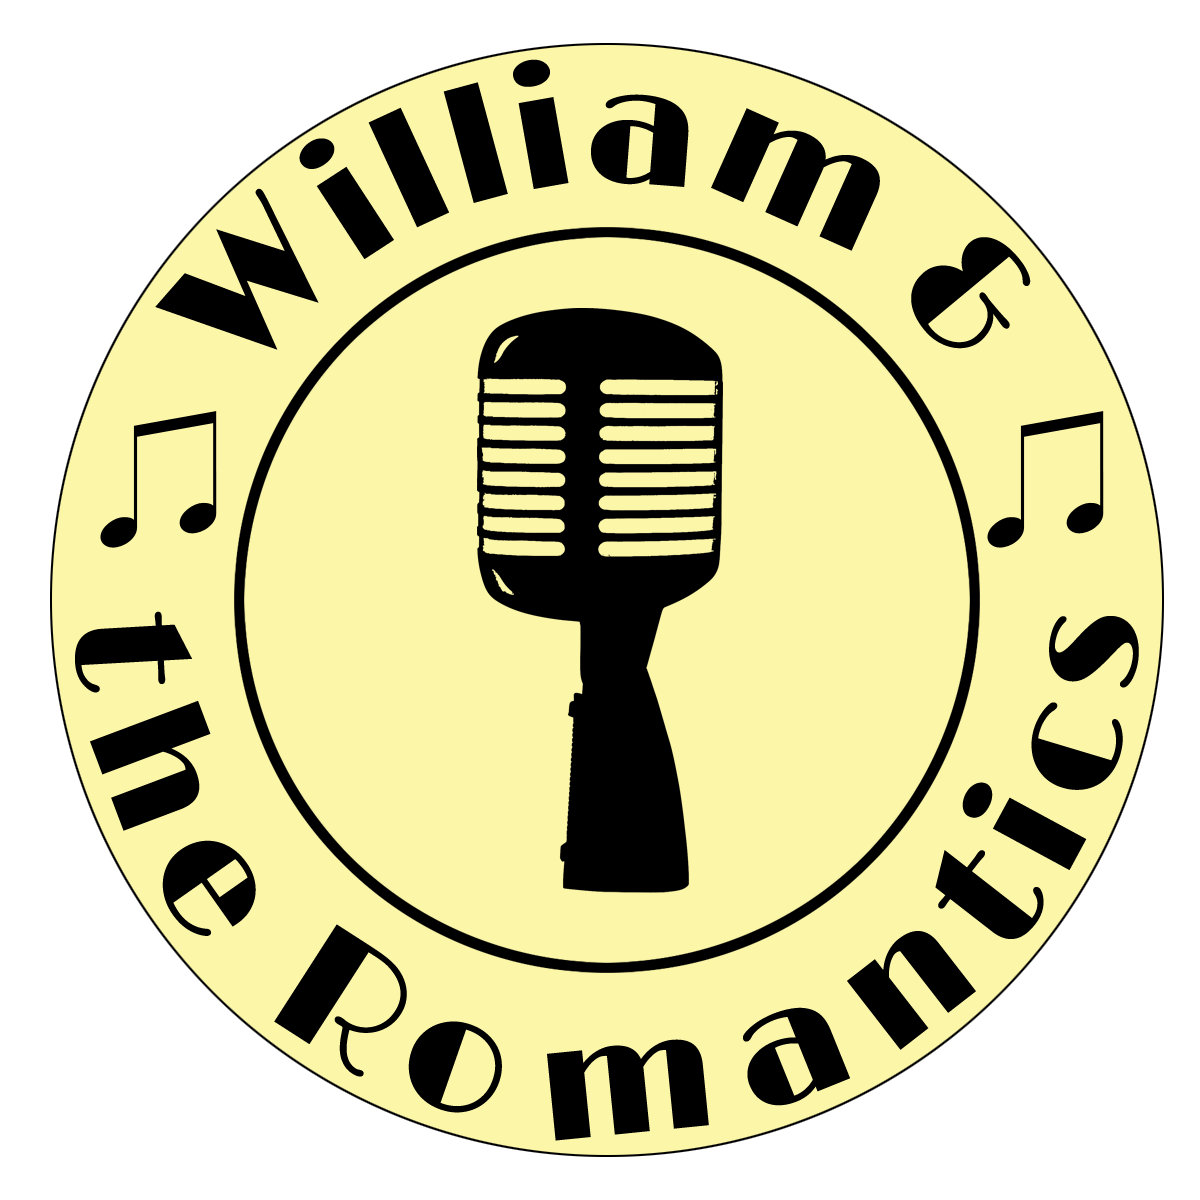 William and the Romantics